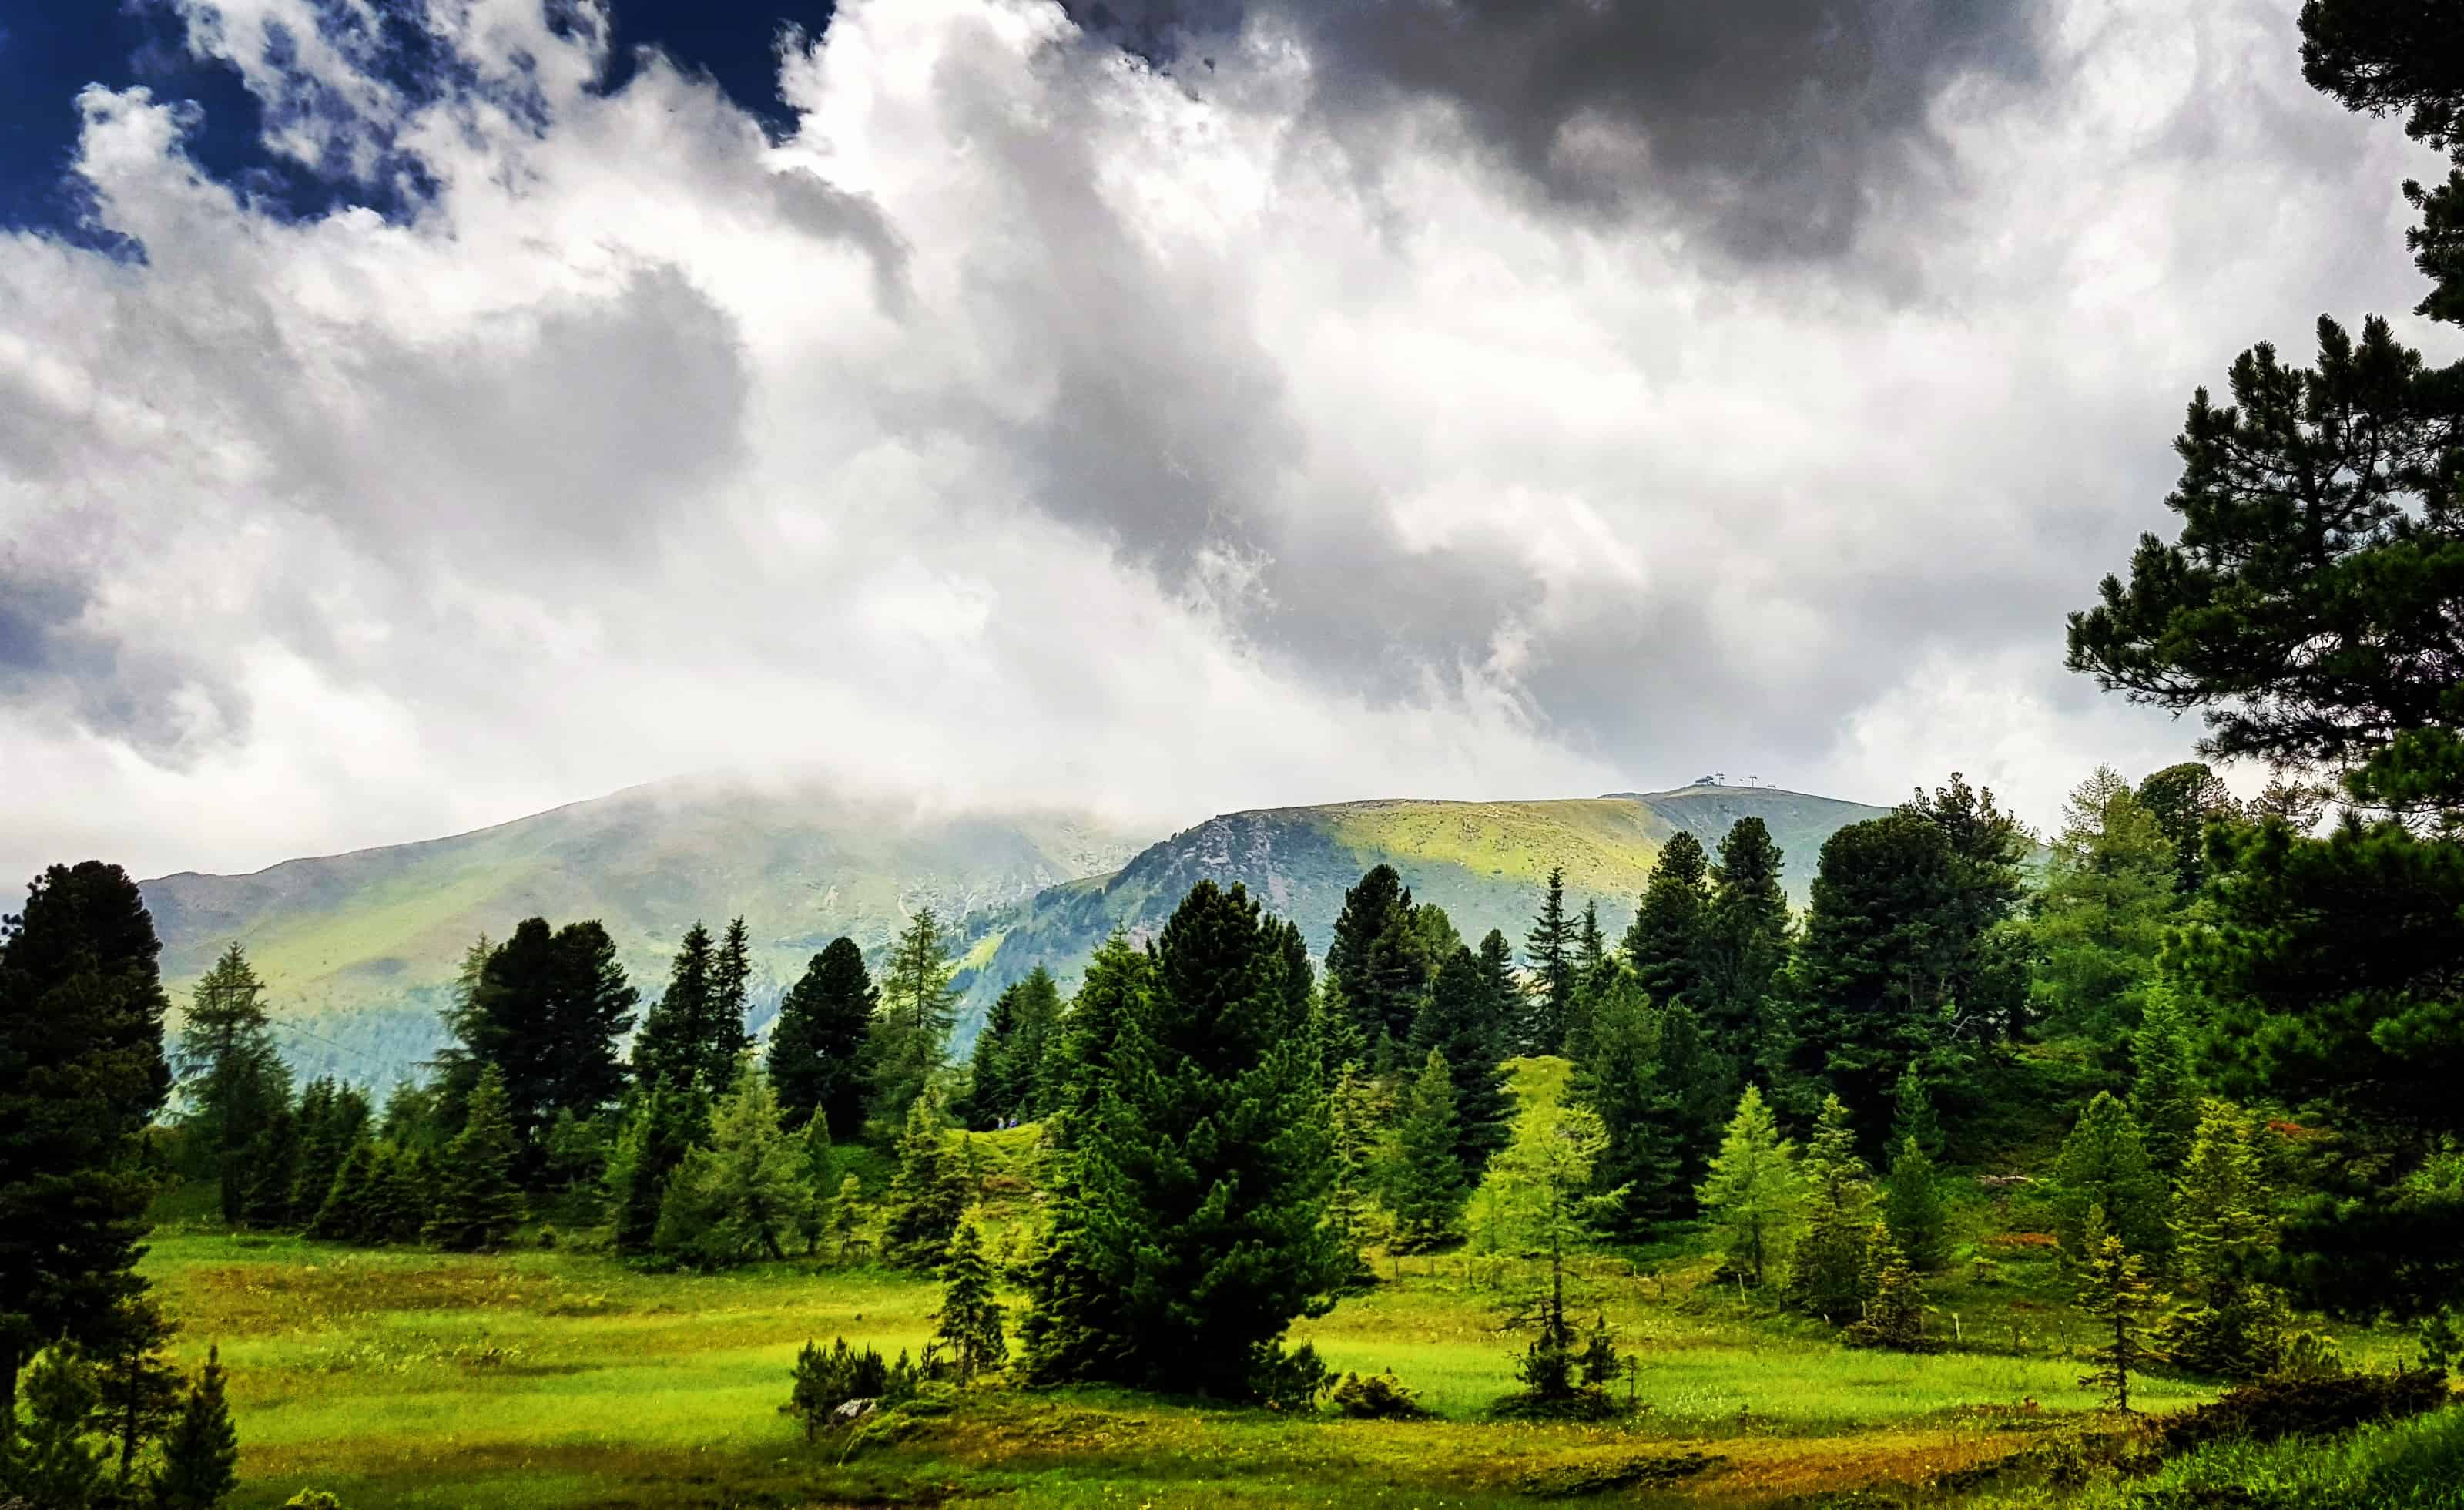 Wandern nach Regenwetter bei Ausflug auf die Turracher Höhe in Kärnten, Österreich. Berge, Wolken, Wiesen und Bäume.